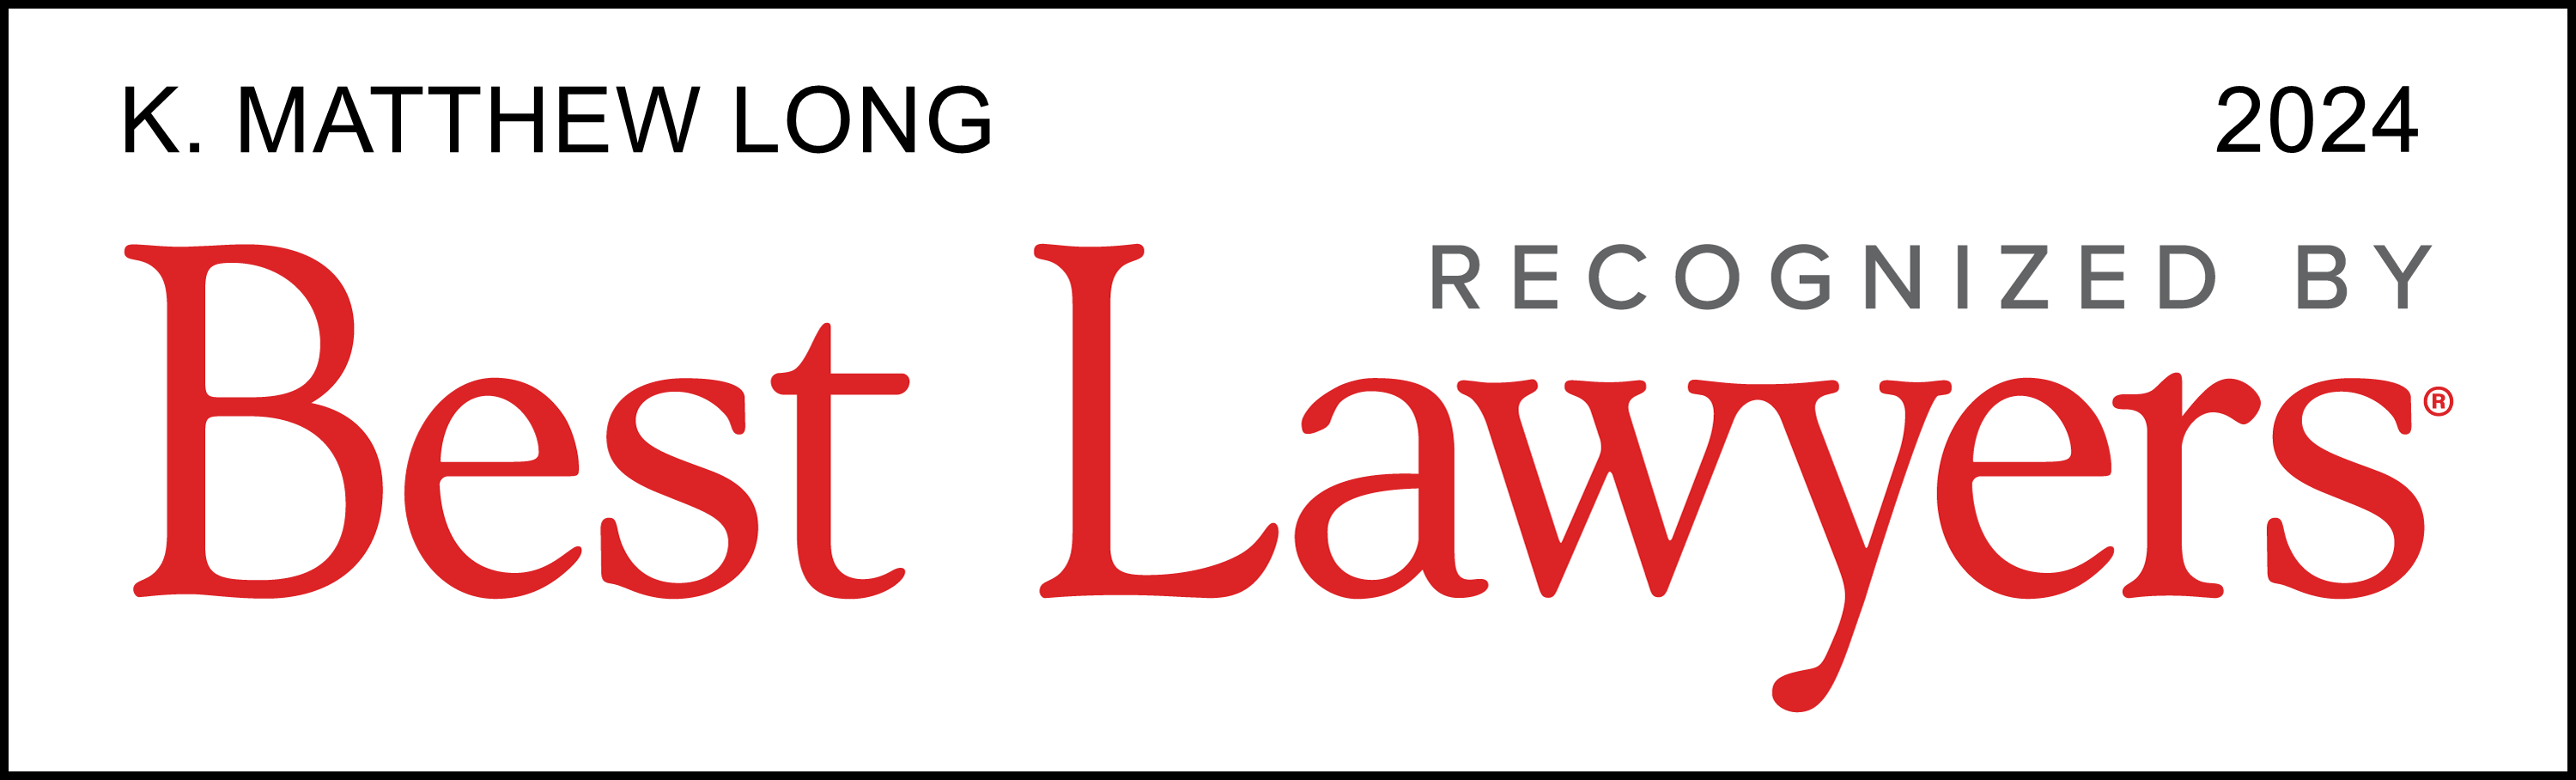 K. Matthew Long Recognized by Best Lawyers 2024